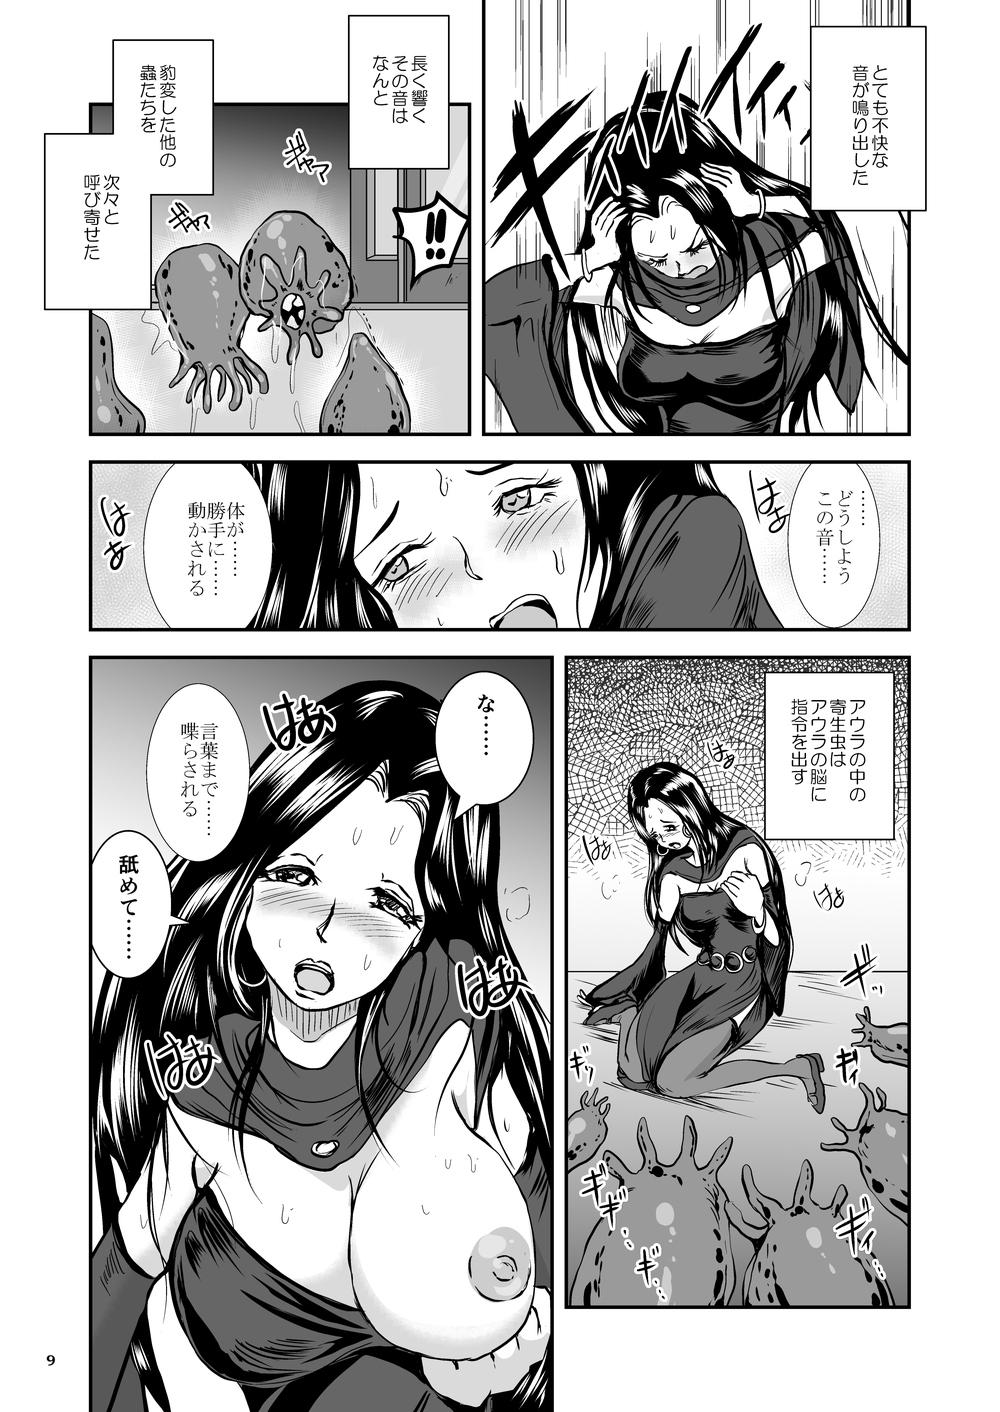 Blackcock Oonamekuji to Kurokami no Mahoutsukai - Parasitized Giant Slugs V.S. Sorceress of the Black Hair as Aura Stepbrother - Page 9